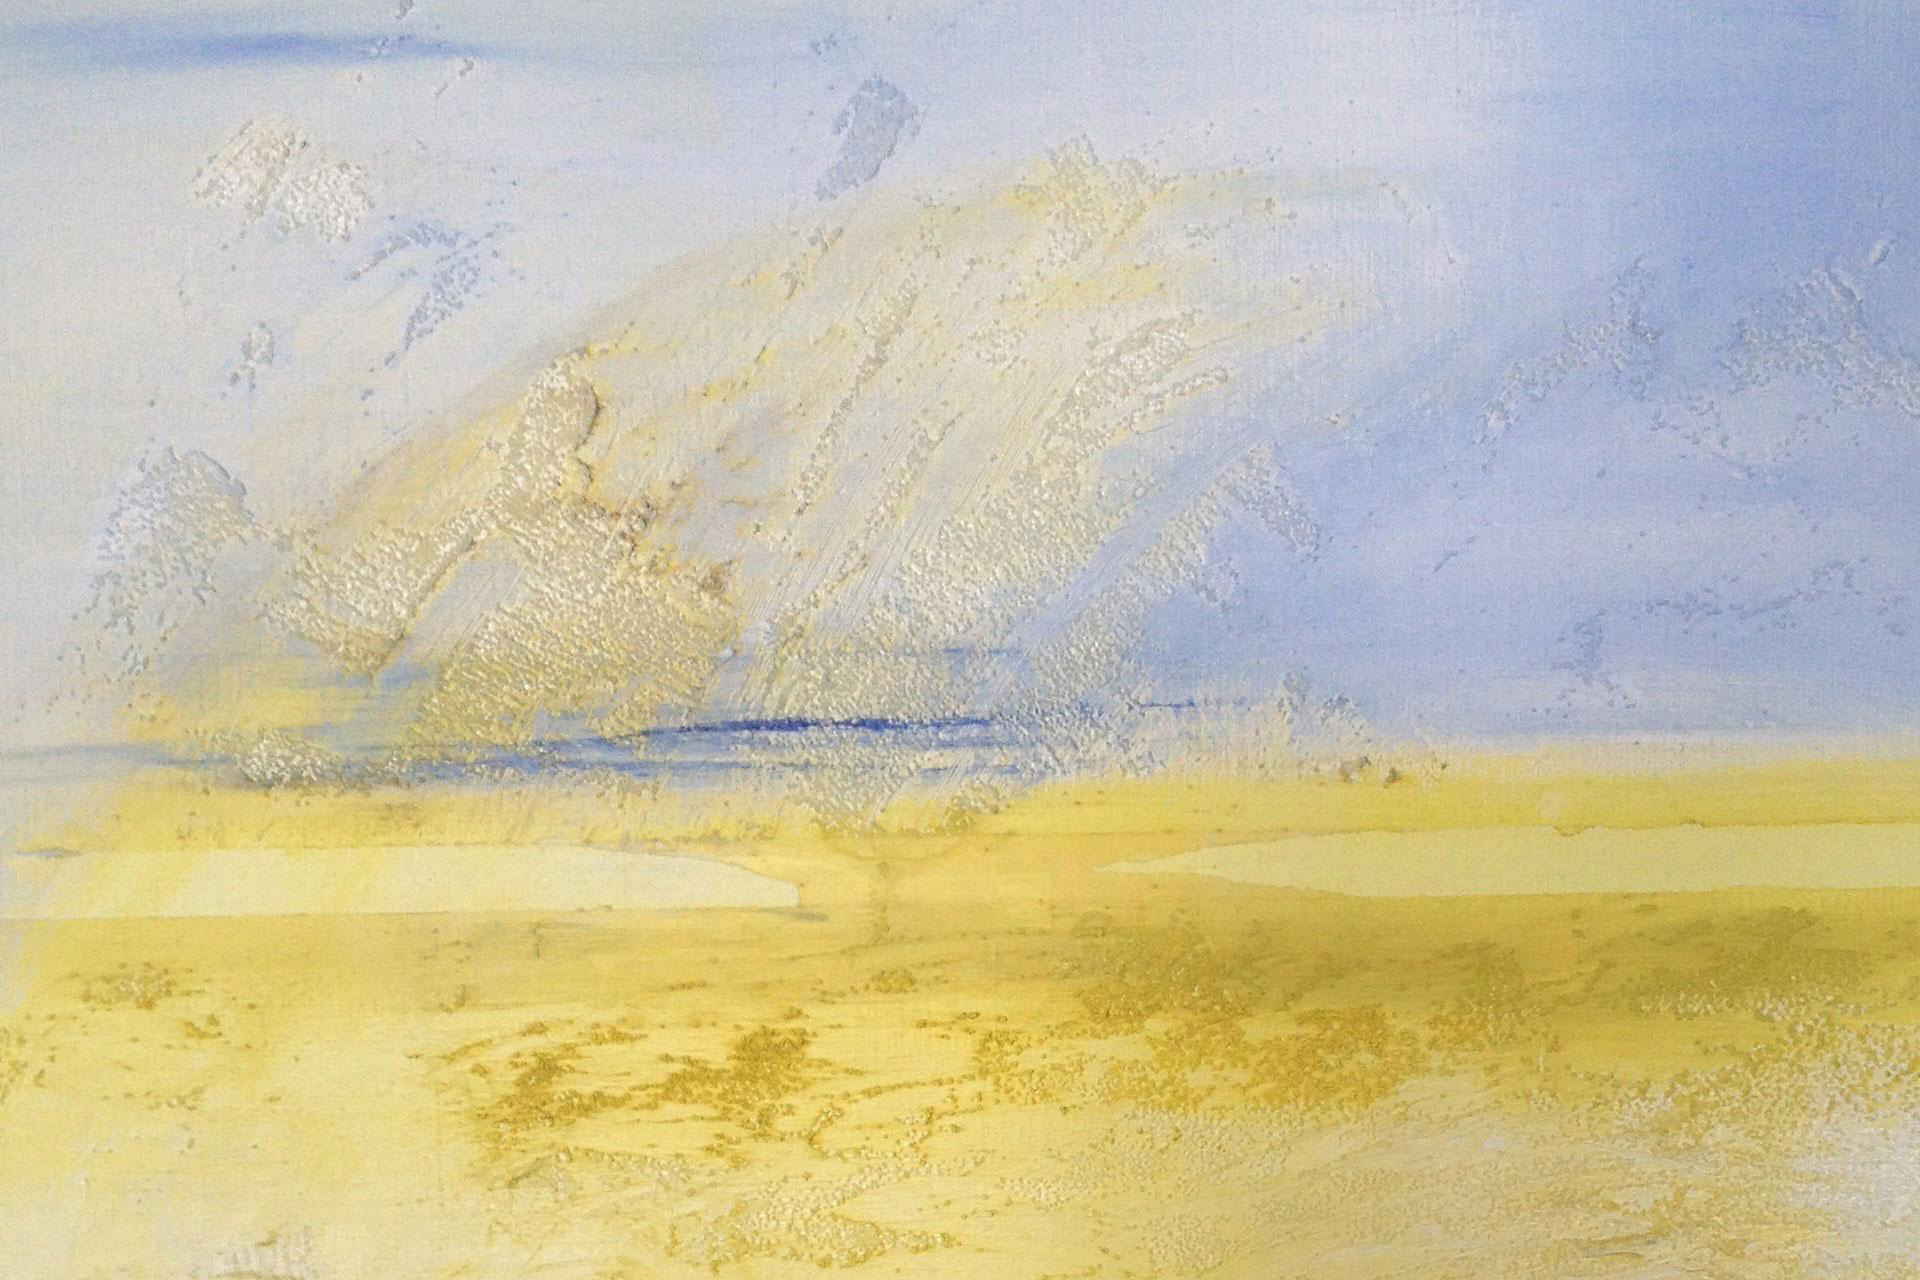 Brighart is een Nederlandse kunstenares. Zij maakt abstracte kunst. Titel van dit zachte geel/blauwe schilderij is: Neverland